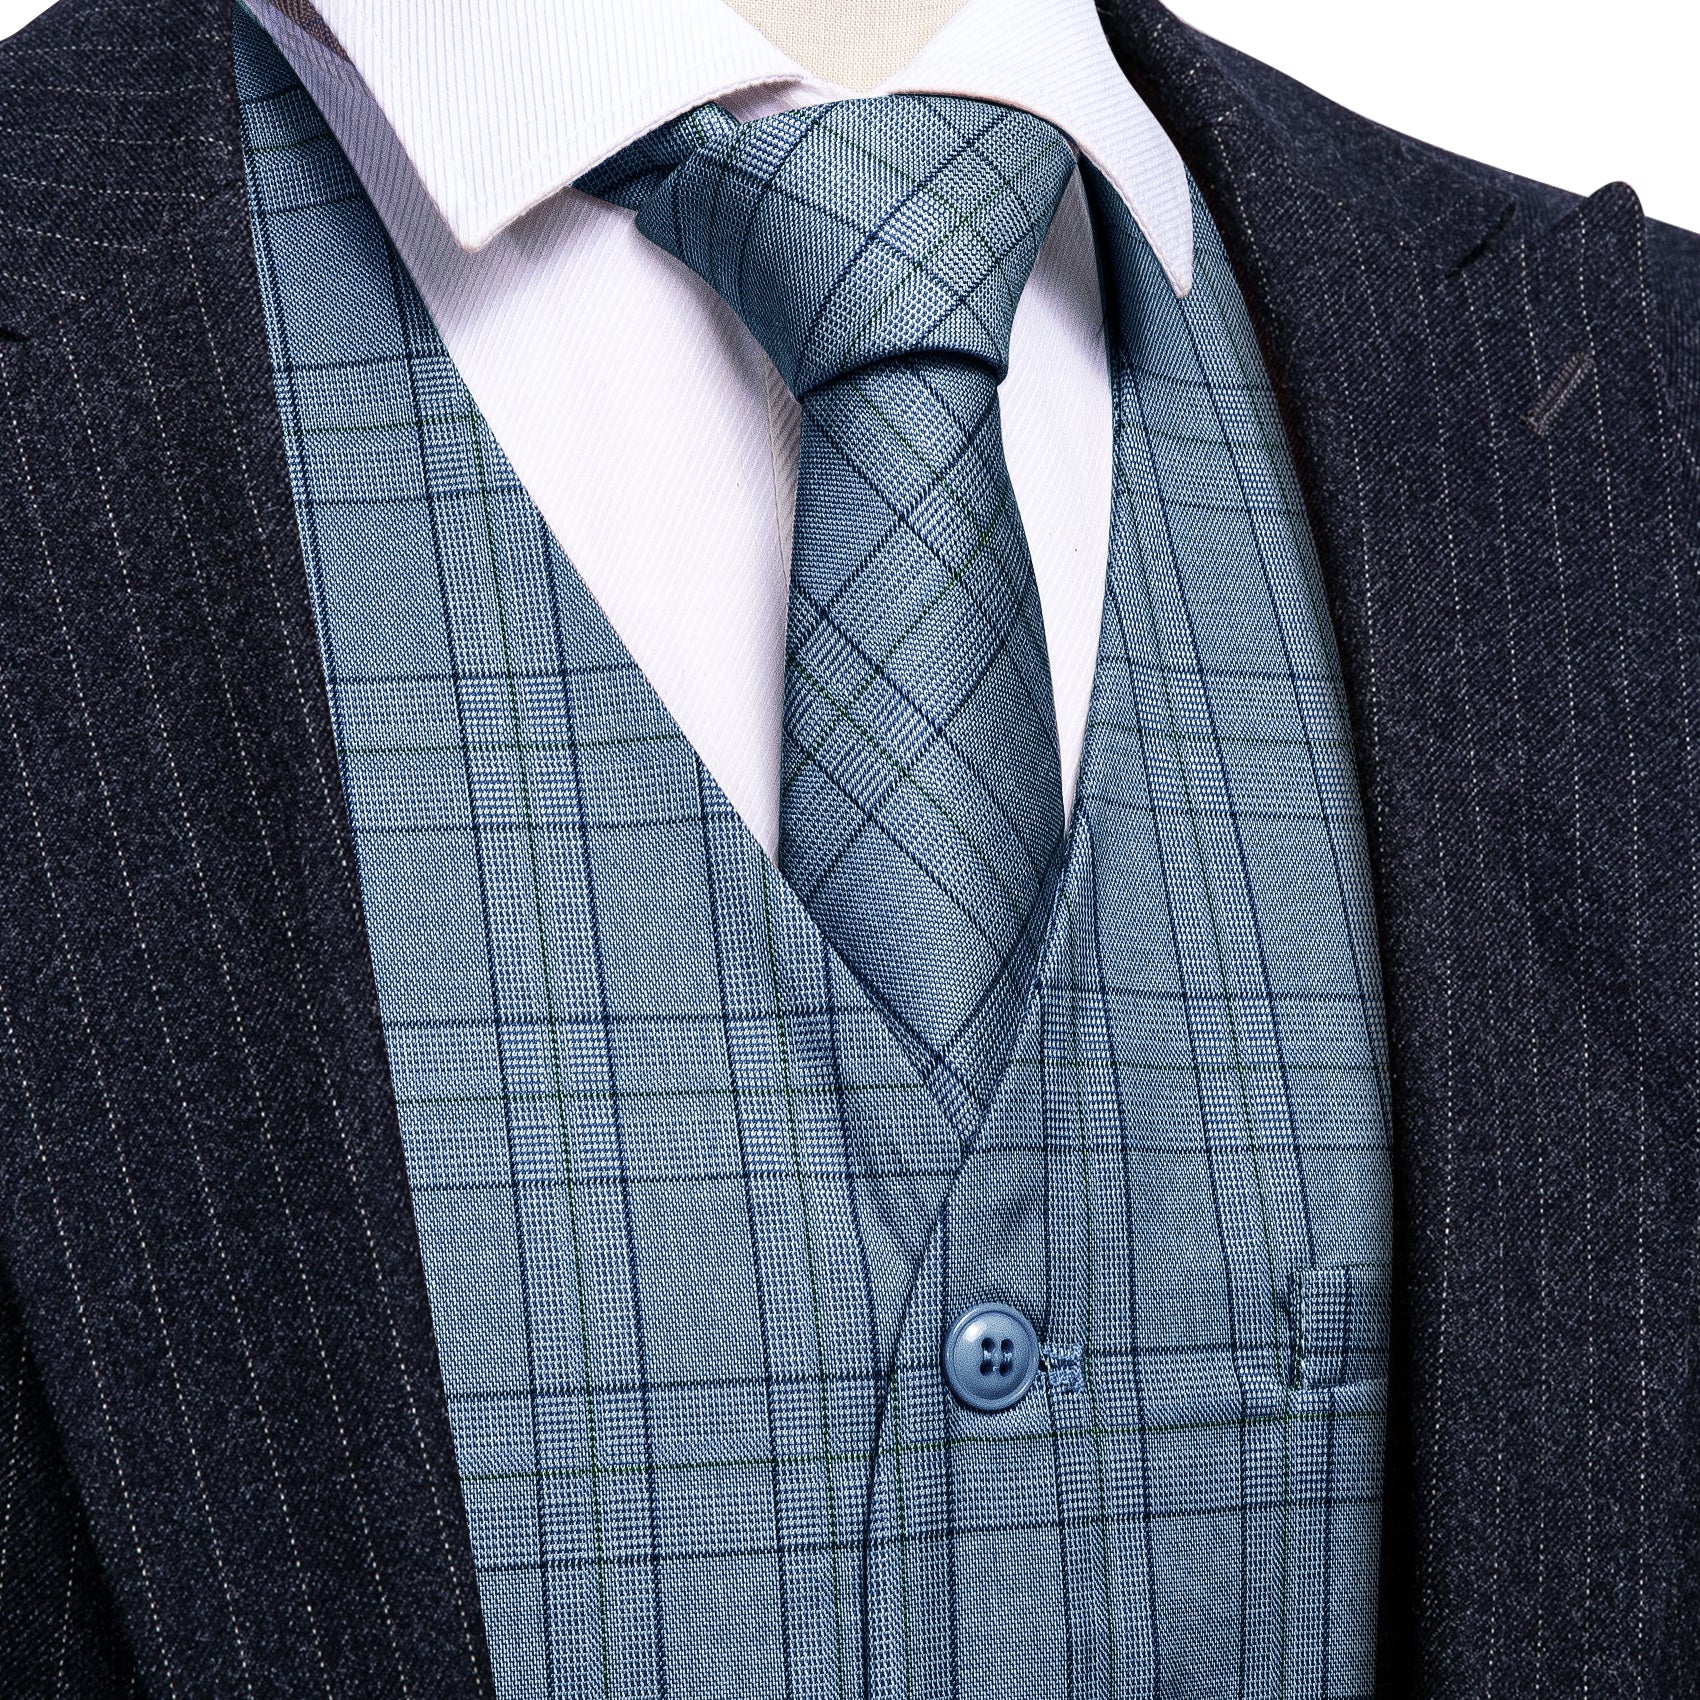 Classy Blue Black Plaid Vest Necktie Set